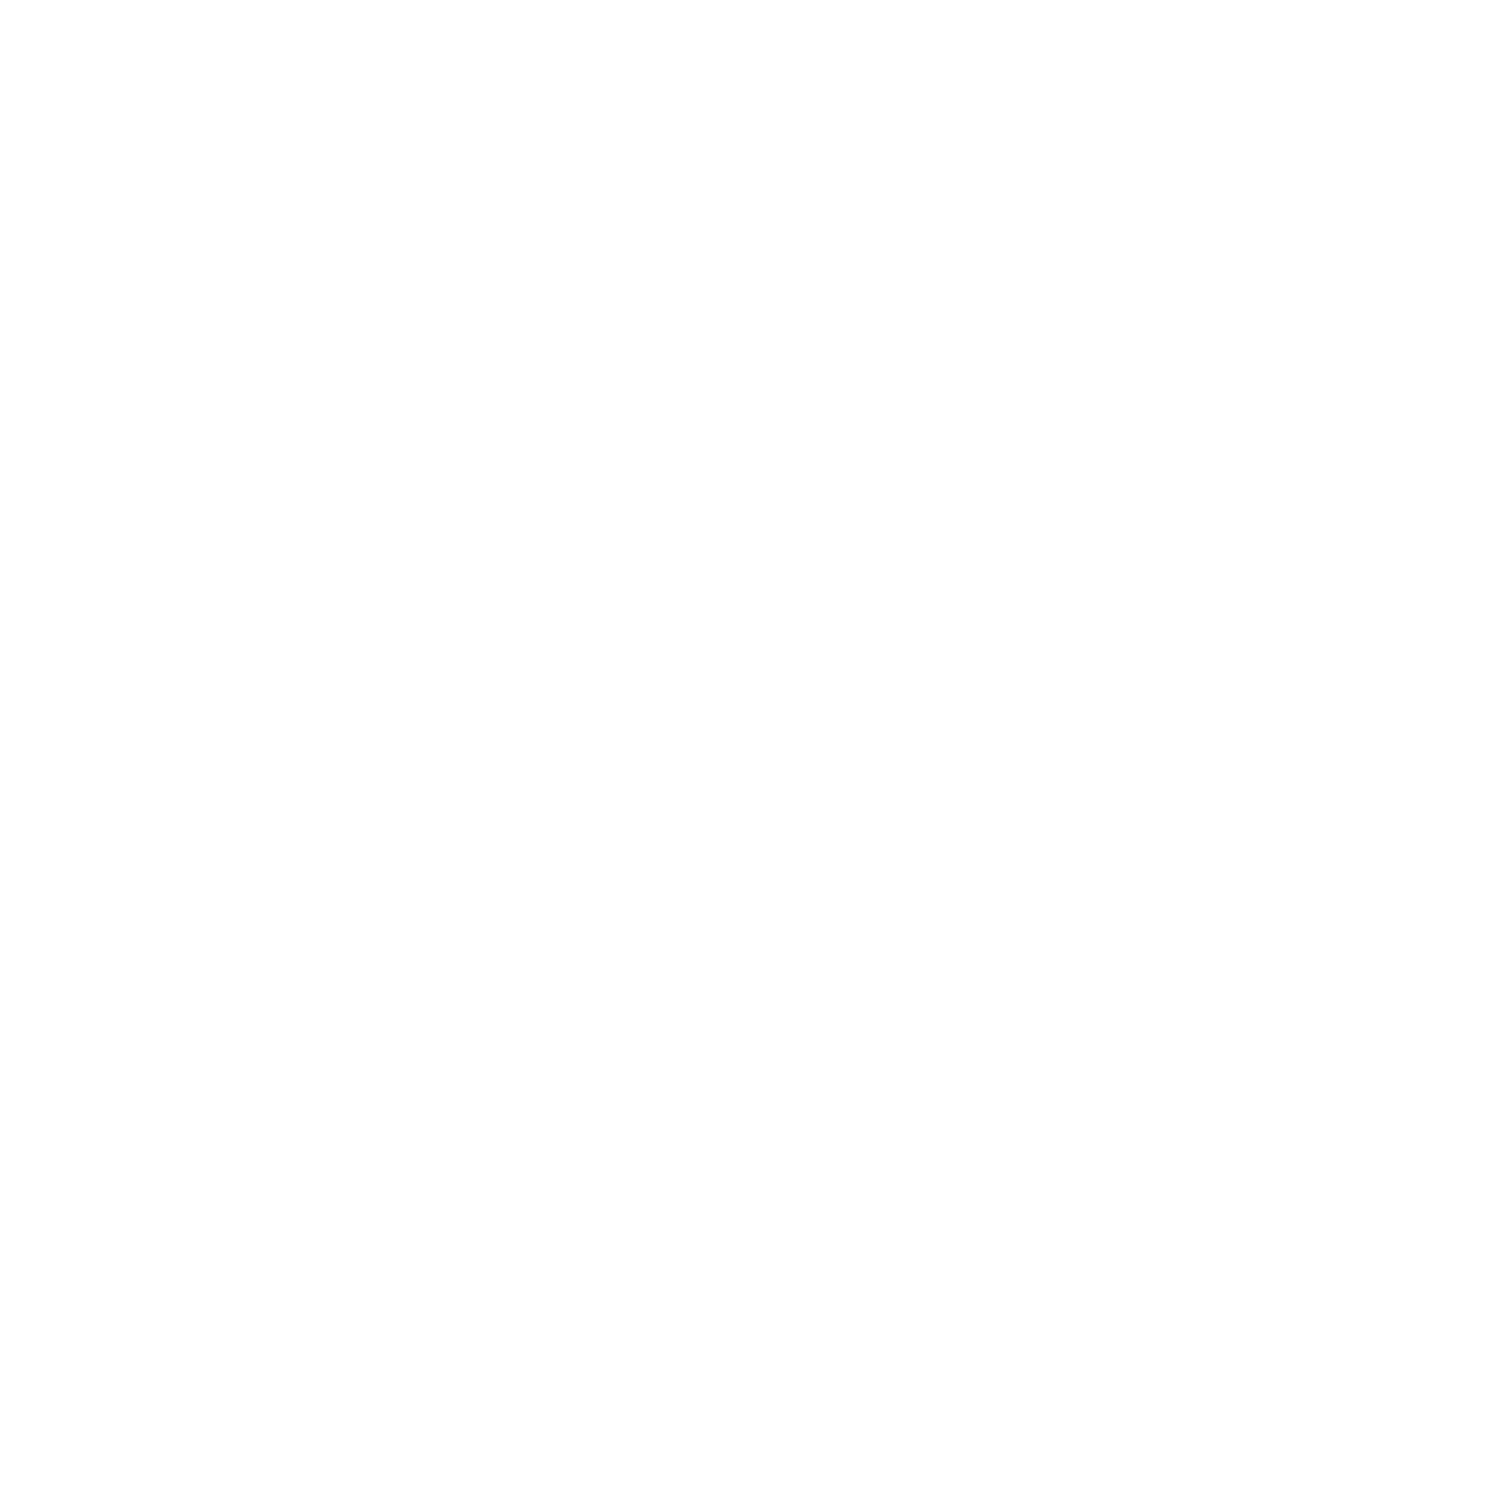 The Crazee Crab